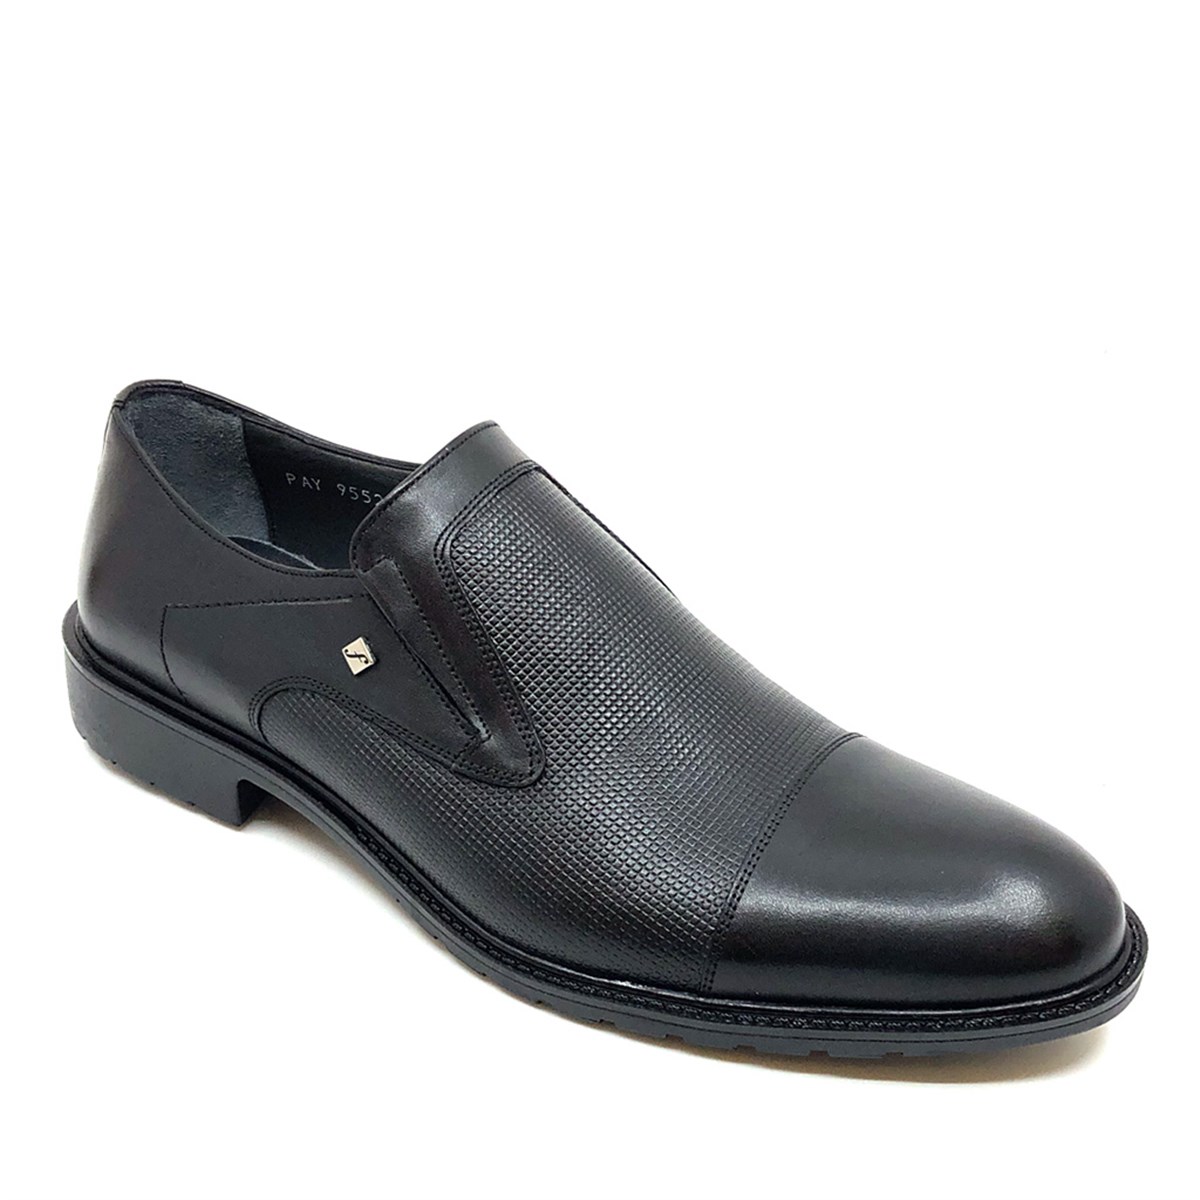 Hakiki Deri Bağcıksız Erkek Ayakkabı, Renk: Siyah, Beden: 39